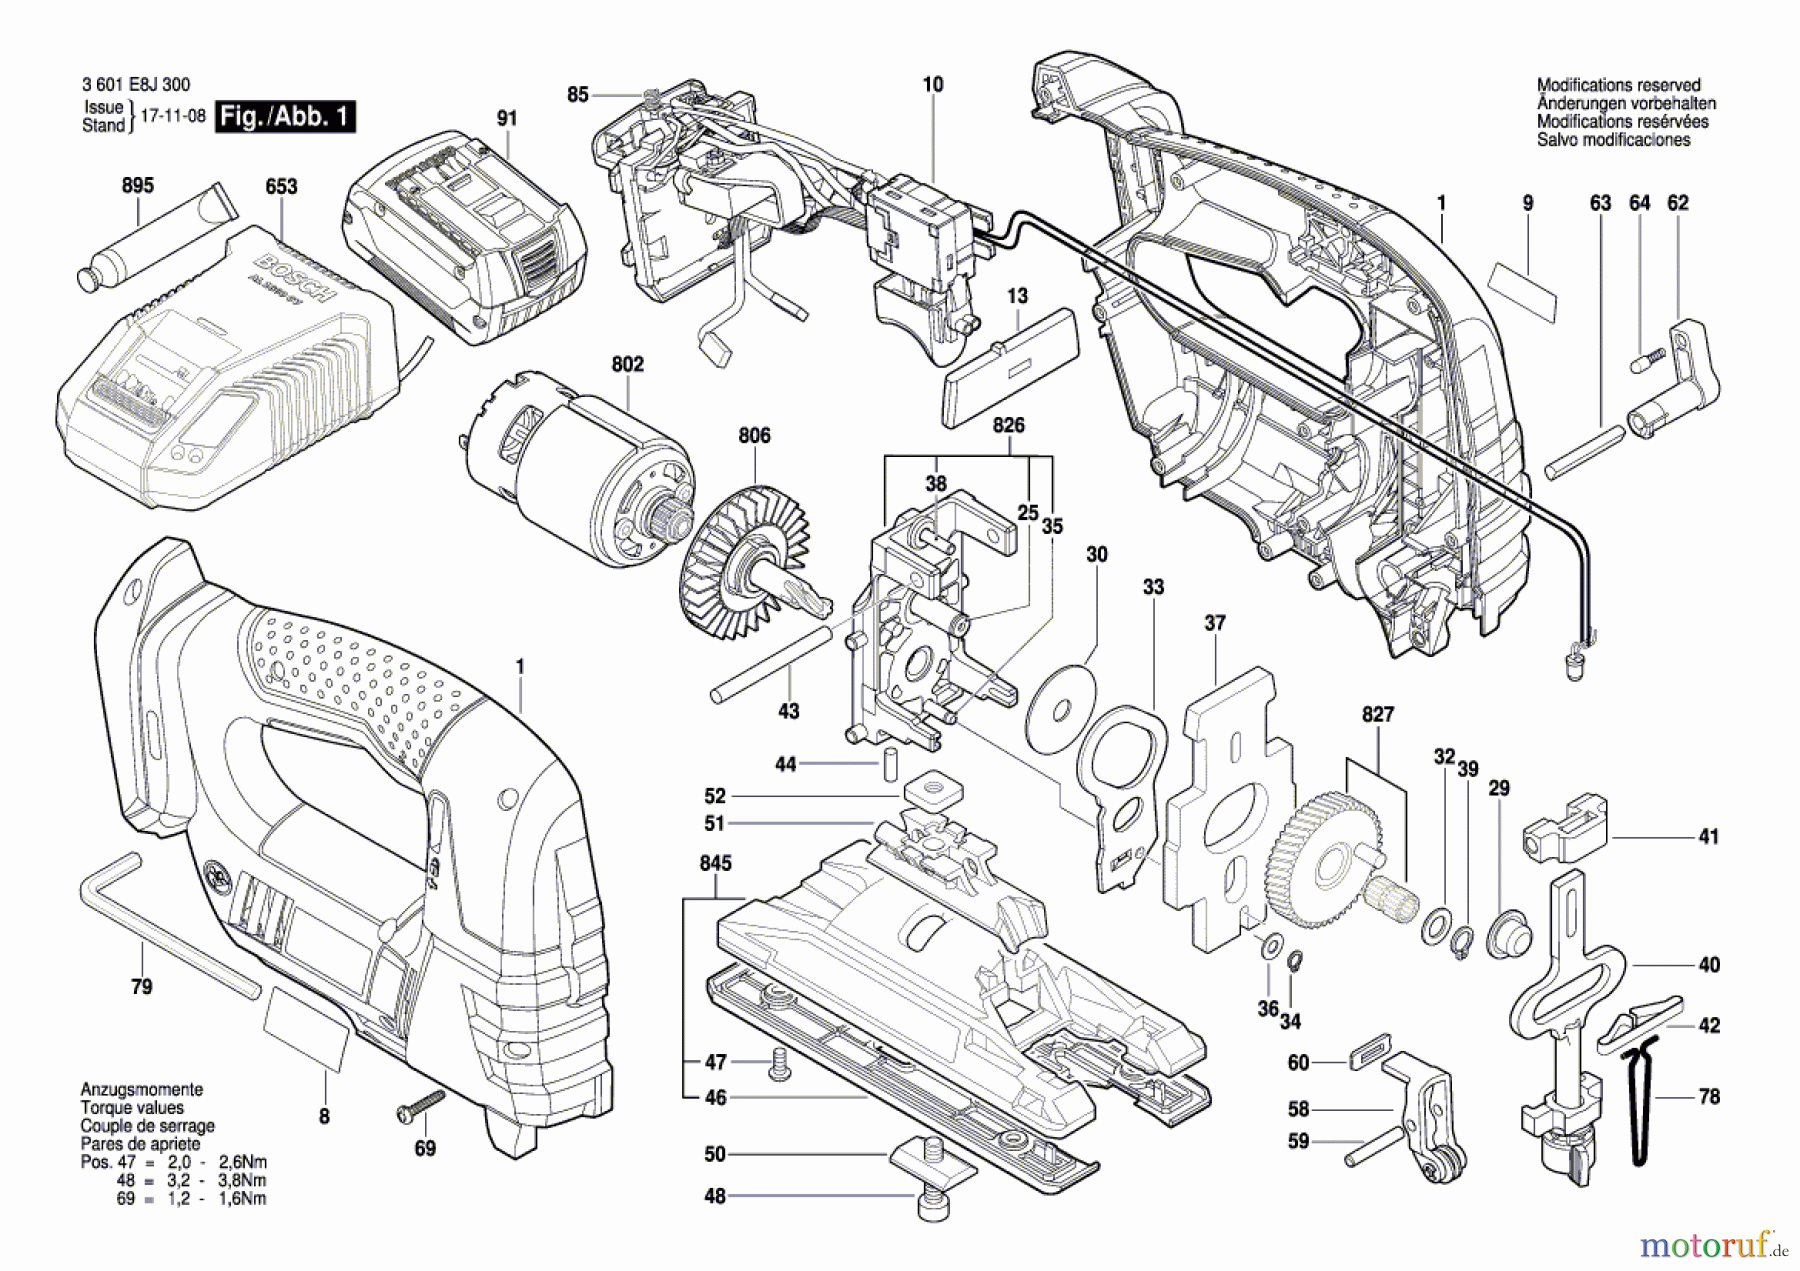  Bosch Akku Werkzeug Akku-Stichsäge GST 18 V-LI Seite 1